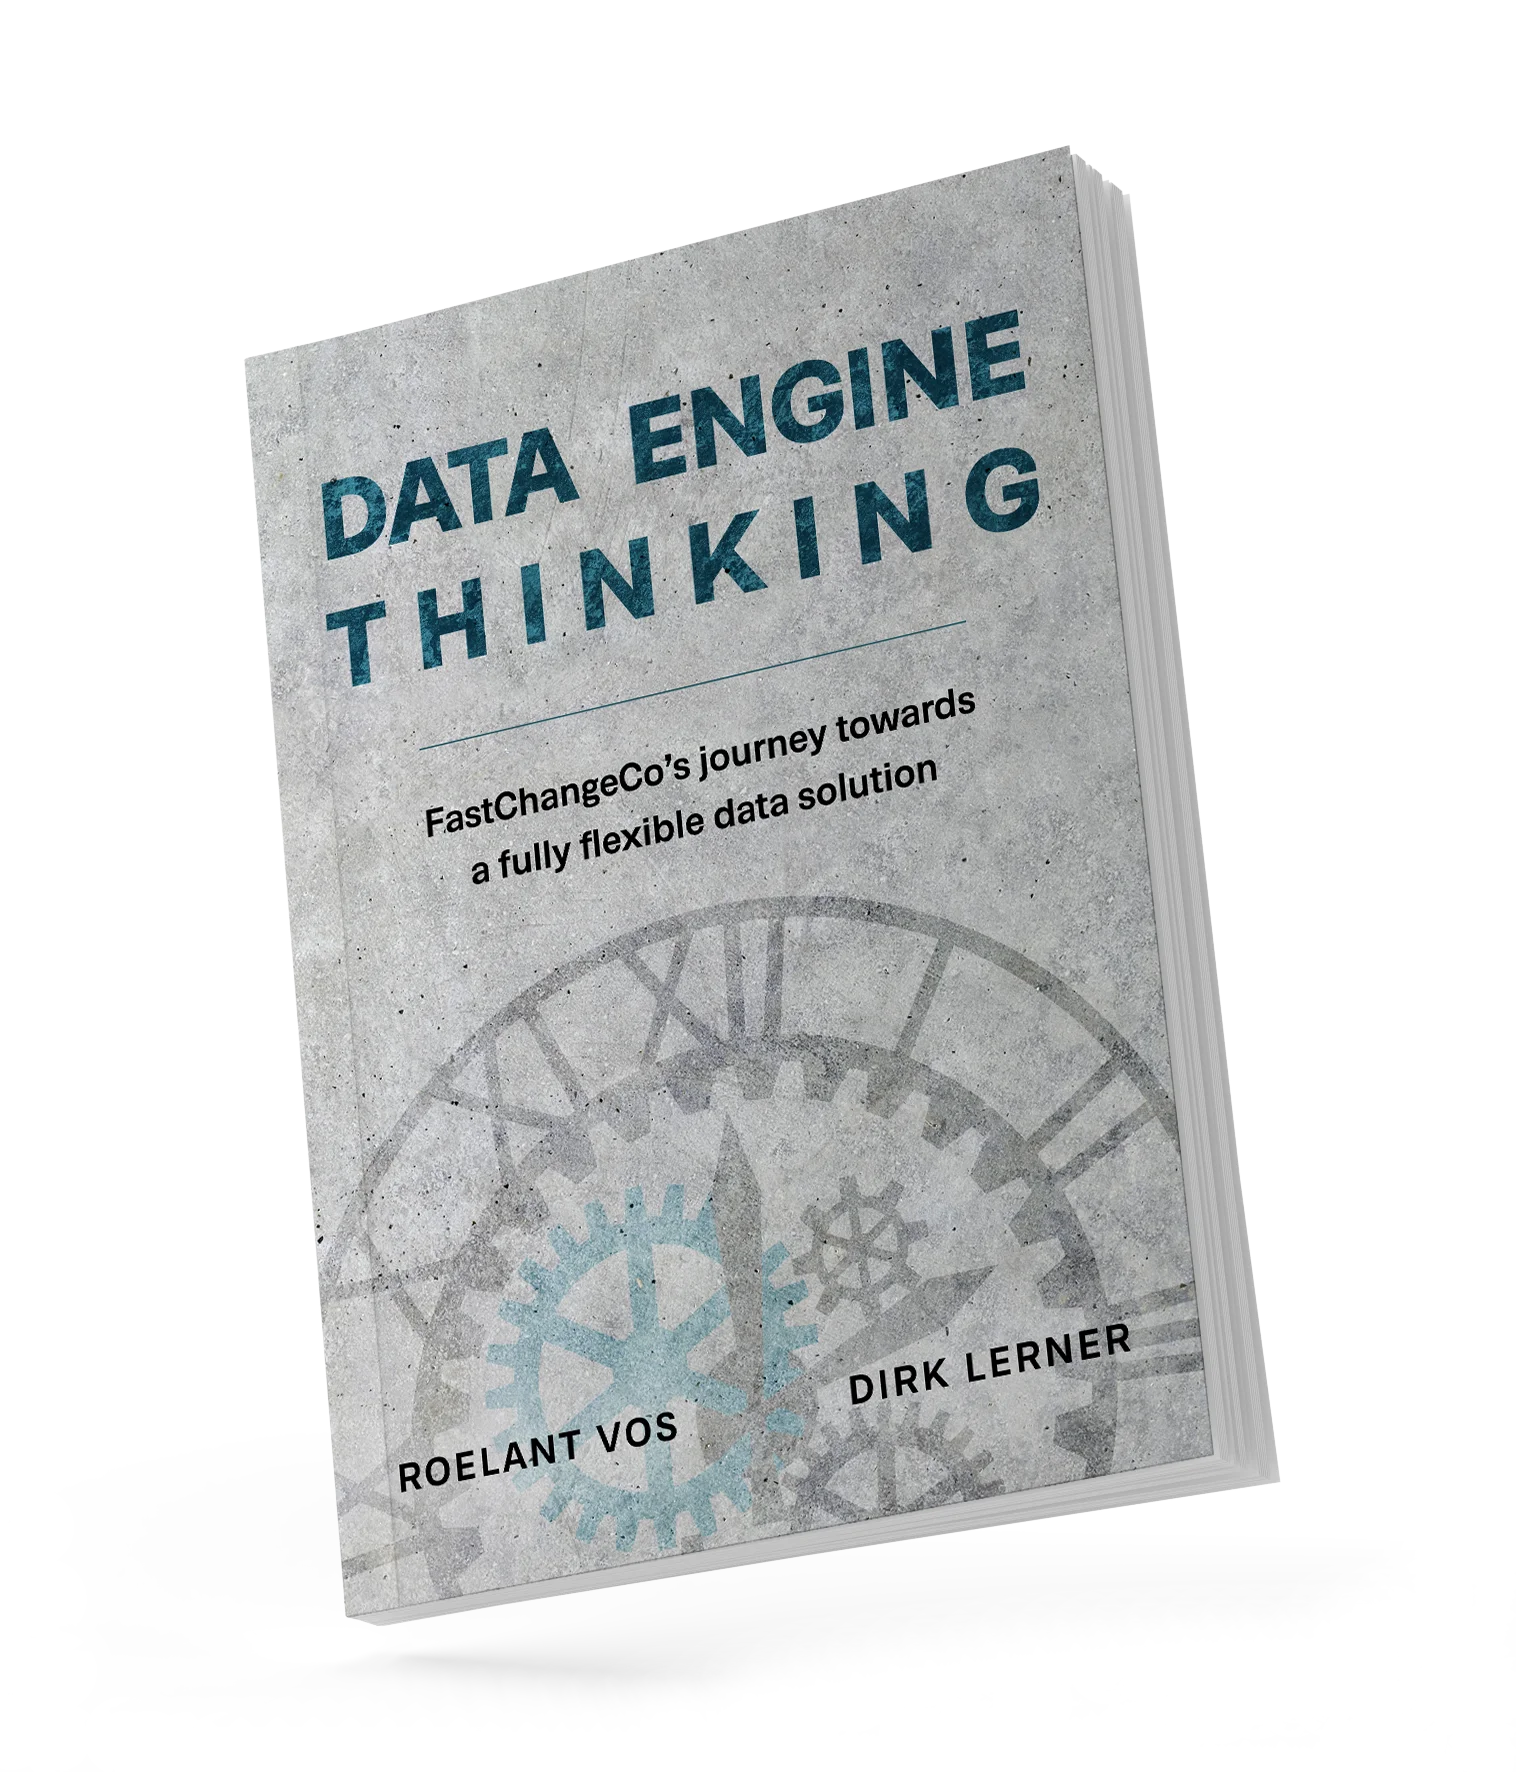 Data Enginge Thinking dynamic